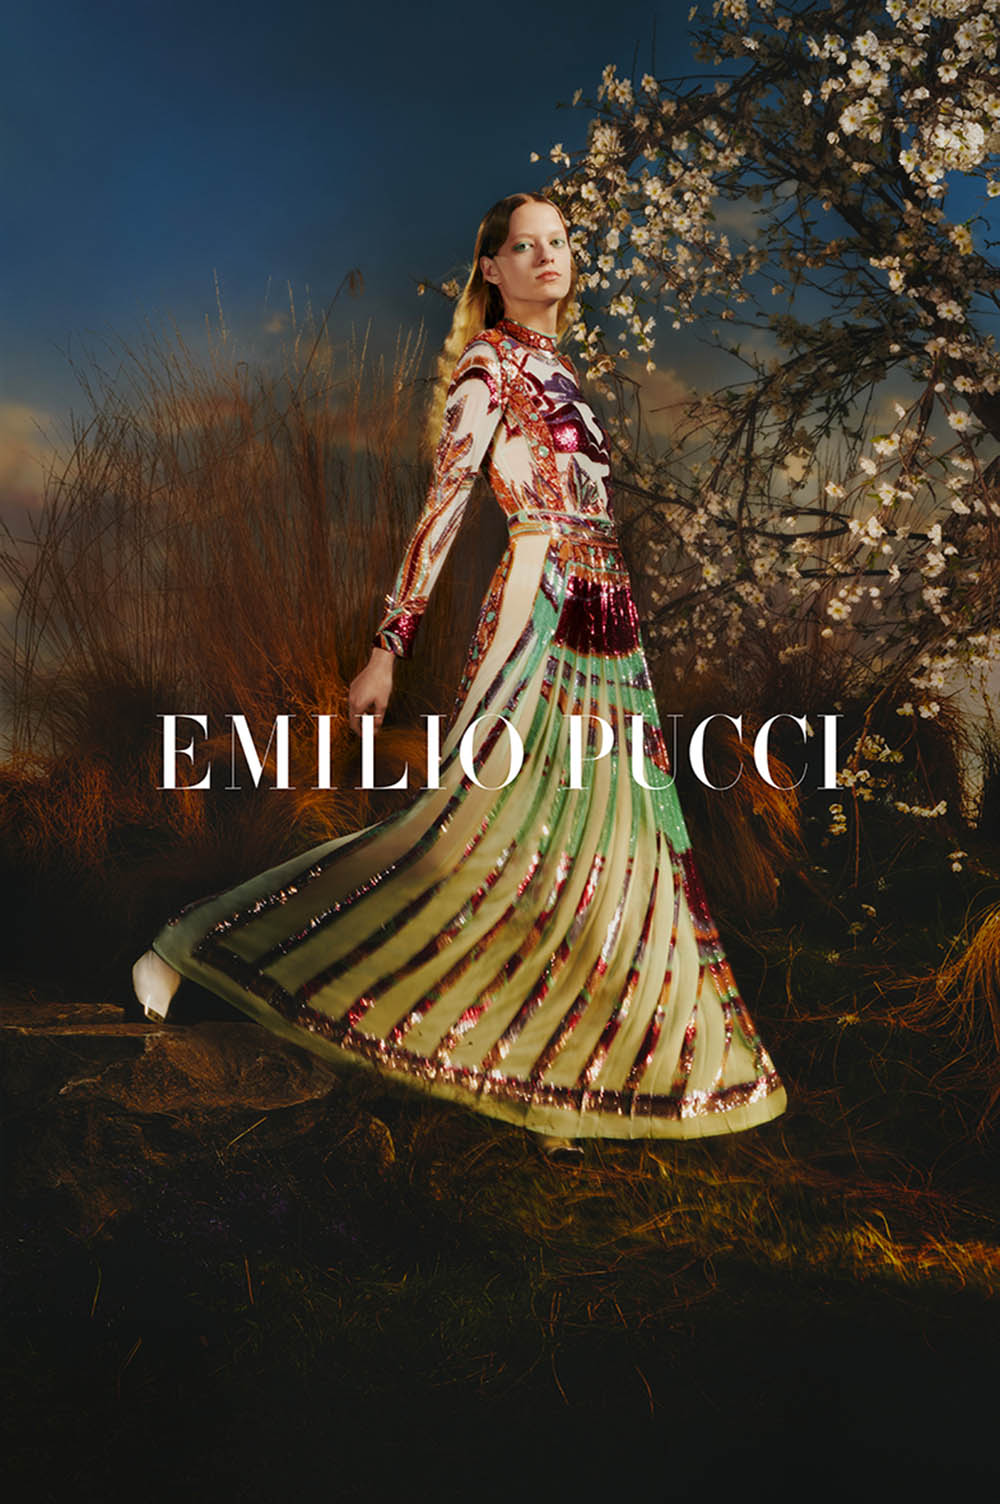 Emilio Pucci Fall Winter 2019 Campaign